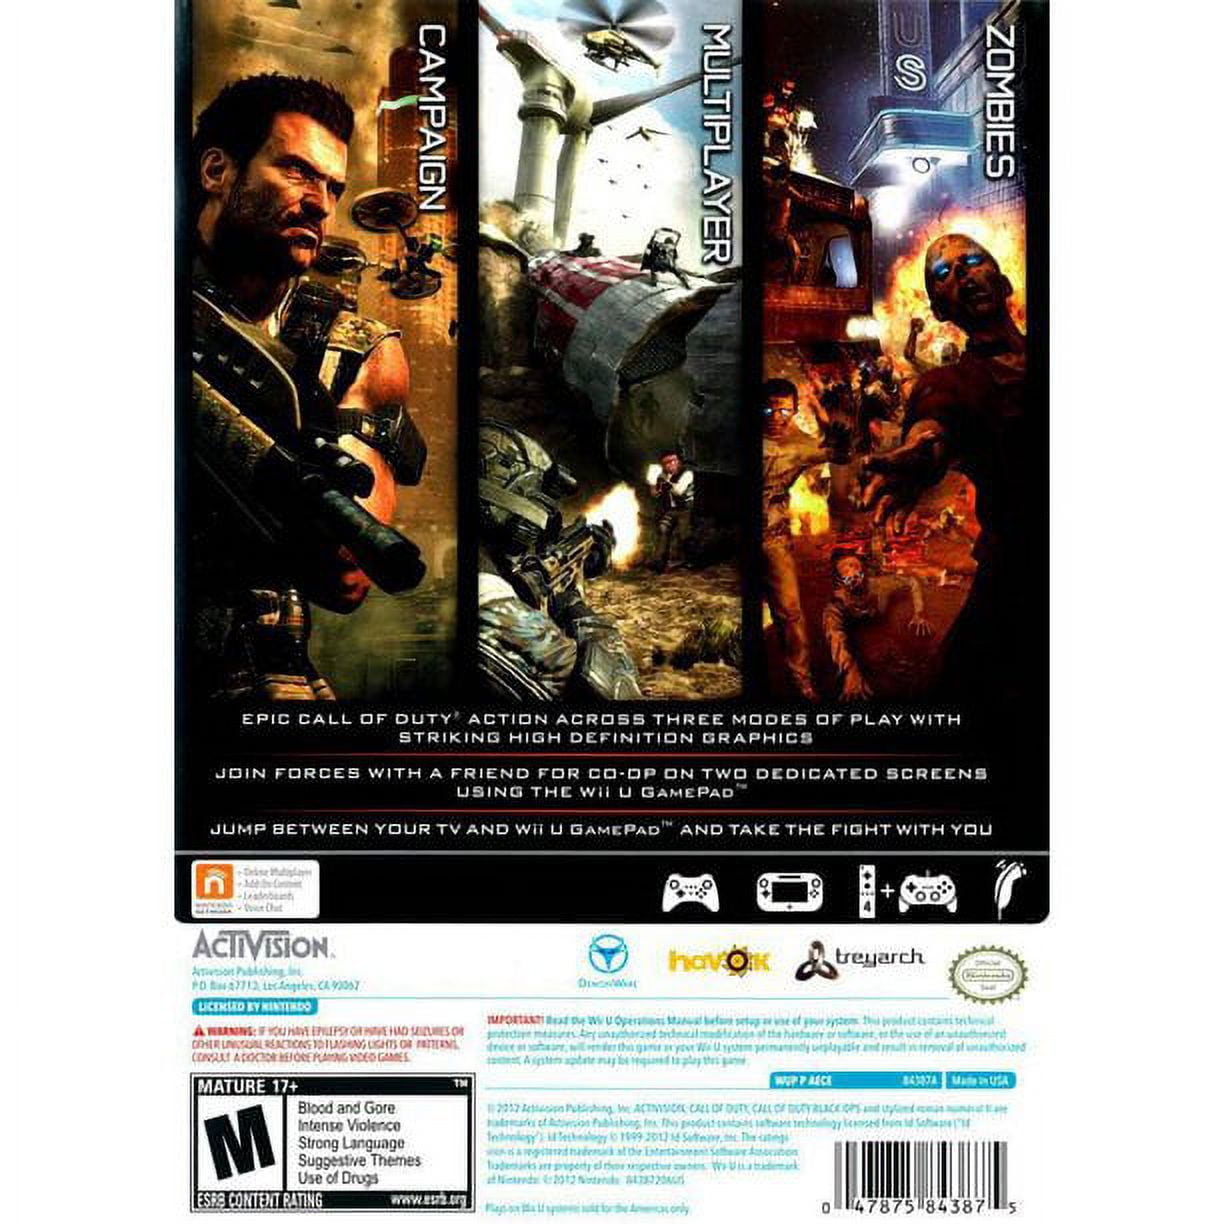 Call of Duty Black Ops 2 (Wii U) 